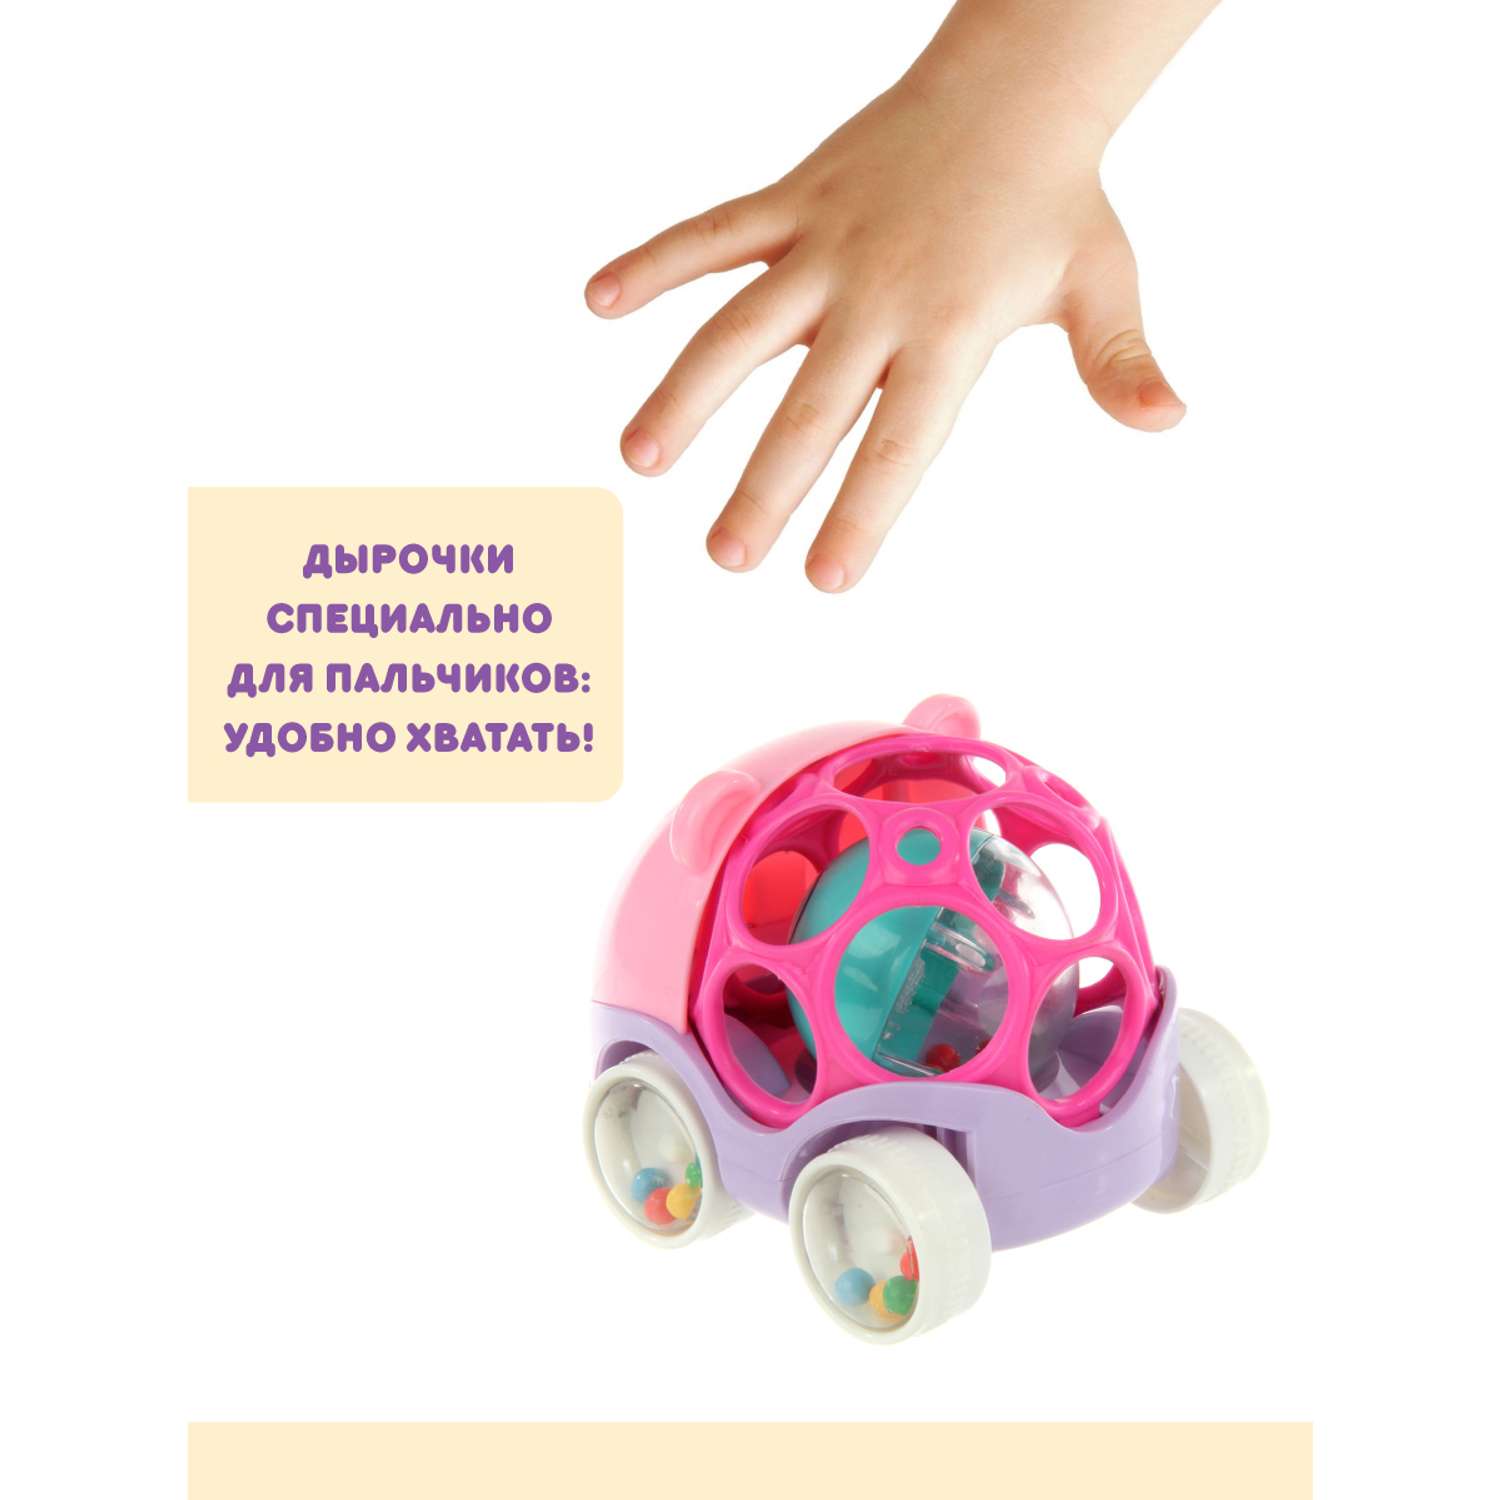 Развивающая игрушка Ути Пути Машинка погремушка - фото 5